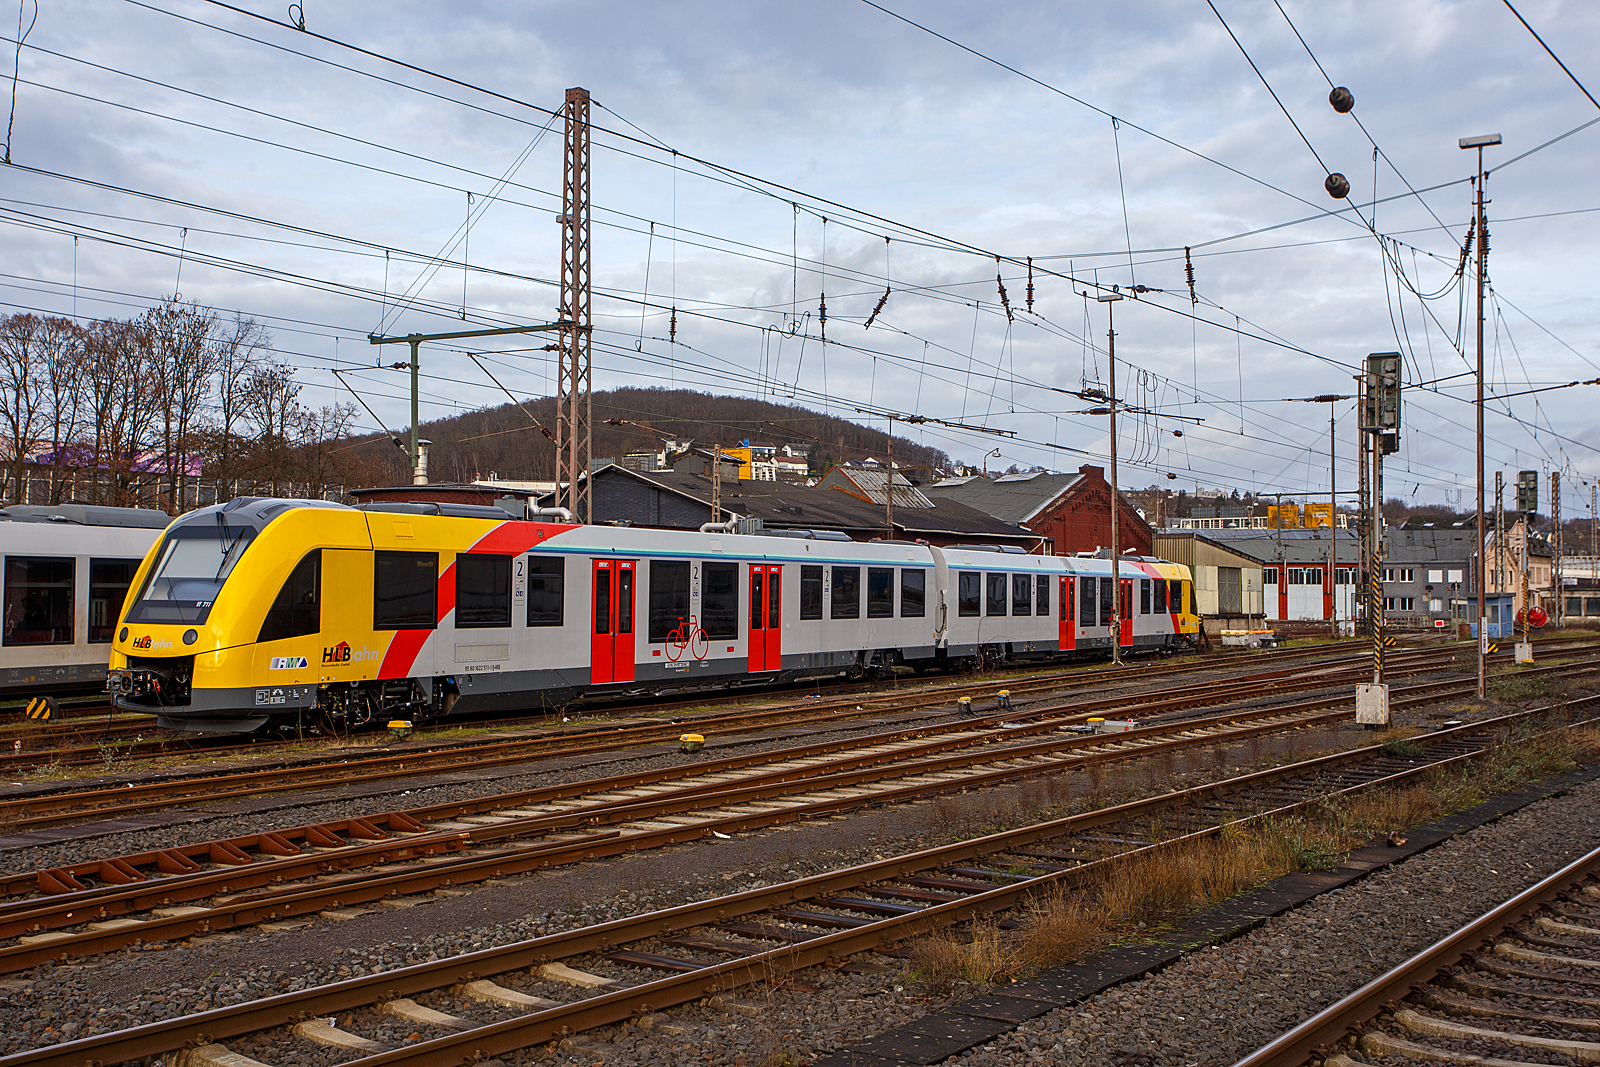 Der recht neue HLB VT 711 – 1622 011 / 1622 511 (95 80 1622 011-2 D-HEB / 95 80 0622 511-1 D-HEB), ein zweiteiliger niederfluriger Dieseltriebzug vom Typ ALSTOM Coradia LINT 54 (BR 1622) der HLB (Hessische Landesbahn GmbH/ Hessischen Bahn GmbH), ist am 30 Dezember 2023 beim Hauptbahnhof Siegen abgestellt.

Der zweiteilige Alstom Coradia LINT 54 ist ein moderner, leistungsstarker und erprobter Niederflur-Dieseltriebzug für den Regionalverkehr auf nicht elektrifizierten Strecken, sie wurden von  ALSTOM Transport Deutschland GmbH in Salzgitter (vormals LHB) entwickelt und gebaut.

Die Lint 54 ruhen auf 4 Drehgestellen (jeder Wagenkasten auf 2 Drehgestellen), davon sind 3 als Triebdrehgestelle und eins als Laufdrehgestell ausgeführt. Die Triebdrehgestelle haben jeweils einen Antriebsmotor (mtu PowerPack Series 1800), die jeweils unterflur im Hochflurteil zwischen Triebdrehgestell und Einstiegsbereich eingebaut sind. Die Motoren treiben jeweils die Radsätze des Drehgestelles über Gelenkwellen und Achsgetriebe an. Diese neusten mtu PowerPacks der Baureihe 1800 erfüllen die neusten europäischen Abgasemissionsvorschriften (Stage 5) und sind leiser. Das Motormanagementsystem, mit dem die drei 400 kW starken Motoren einzeln abgeschaltet werden können, ermöglichen die Verringerung des Treibstoffverbrauchs und die Senkung des CO²-Ausstoßes. Die diesel-mechanische Antriebe (3 x 400 kW) können den Triebwagen bis zu 140 km/h beschleunigen.

Die Passagiere profitieren dabei von 140 Sitzplätzen in 2 Wagen. Durch je 4 Türen pro Fahrzeugseite mit automatischen Einstiegshilfen werden schnelle
Fahrgastwechselzeiten ermöglicht. Der stufenlose Zugang für mobilitätseingeschränkte Fahrgäste mit Rollstühlen, Kinderwagen und Fahrrädern zu den beiden Niederflurbereichen in den zwei Wagenteilen gewährleistet komfortables Reisen.

TECHNISCHE DATEN:
Spurweite: 1.435 mm (Normalspur)
Achsfolge: B’2’+B’B’
Fahrzeuglänge über Kupplung:  54.270 mm
Fahrzeugbreite: 2.750 mm
Maximale Fahrzeughöhe (über SO):  4.280 mm
Einstieghöhe (über SO): ca. 800 mm 
Minimaler befahrbarer Radius Werkstatt/Betrieb: 100/125 m
Installierte Motorleistung: 3 x 400 kW 
Leistungsübertragung: mechanisch
Höchstgeschwindigkeit: 140 km/h 
Eigengewicht: ca. 98 t
Maximale Radsatzlast bei Fahrzeughöchstgewicht: ca. 18 t
Sitzplätze: 140 , davon 14 Klappsitze
Toiletten: 1 Universaltoilette (behinderten- und rollstuhlgerecht)
Mehrzweckbereiche. 2 (für 12 Fahrräder oder 6 Kinderwagen, 2 Rollstühle)
Türen (je Seite): 4 zweiflügelige Schwenkschiebetüren 1.300 mm breit
Dieseltankvolumen:  ca. 2.780 l
Reichweite: ca. 1.600 km